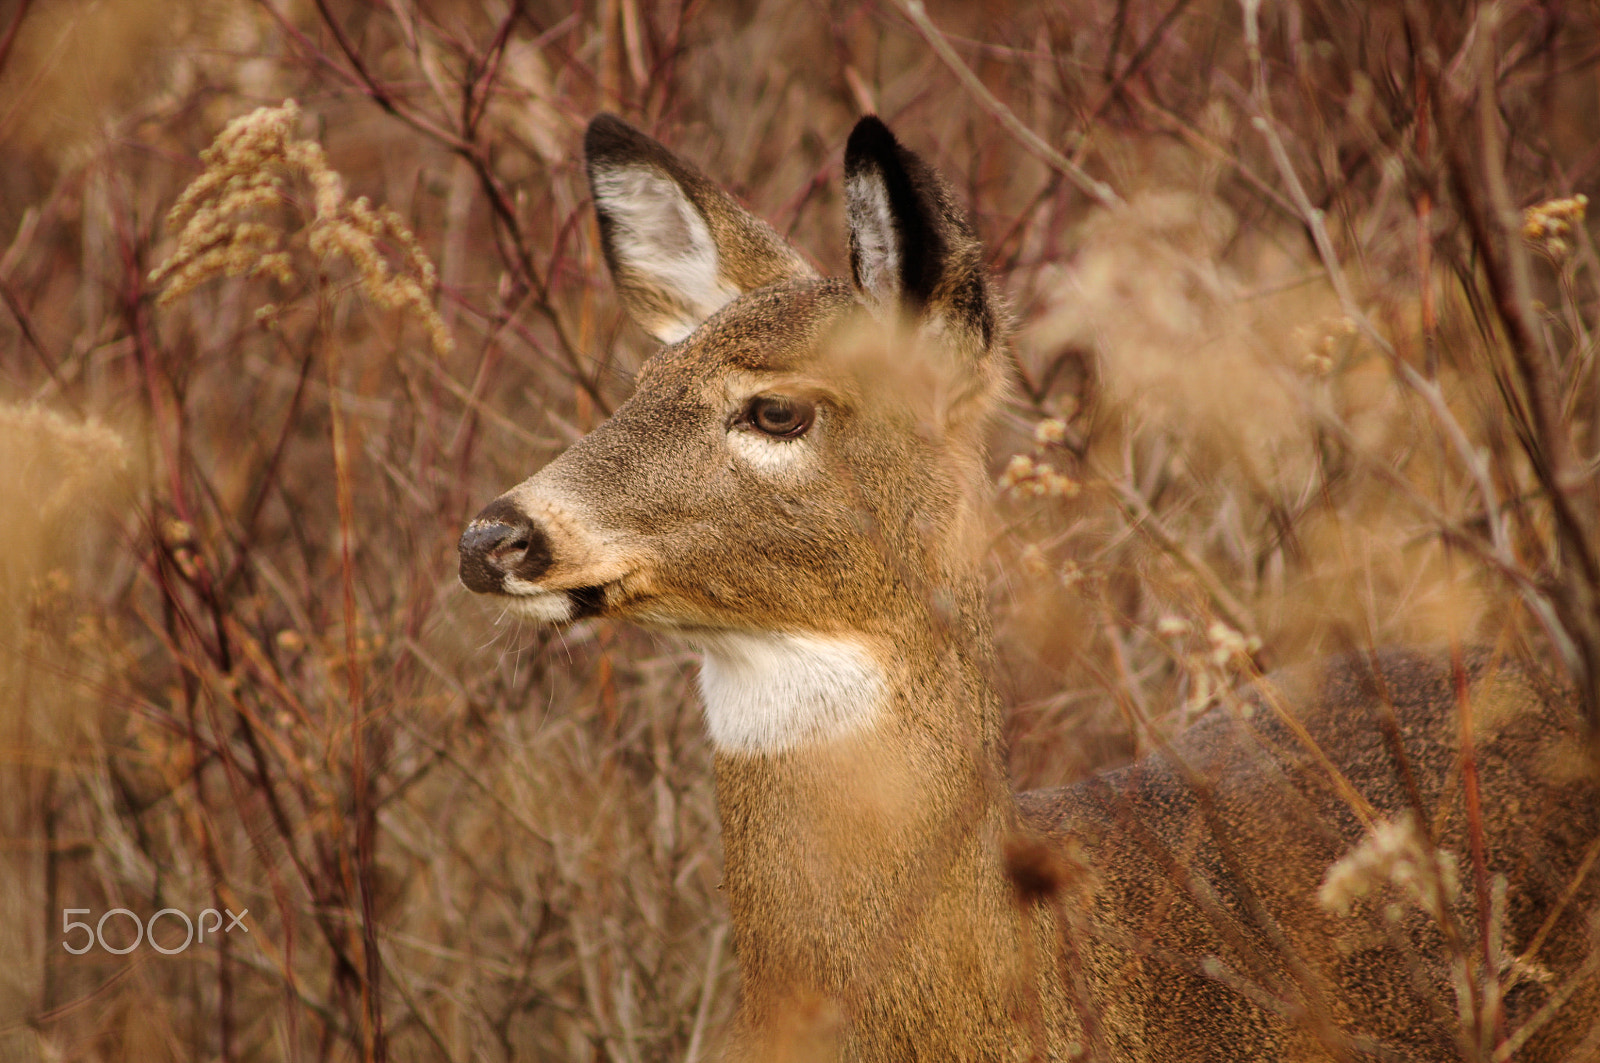 AF Zoom-Nikkor 75-300mm f/4.5-5.6 sample photo. Whitetail deer photography